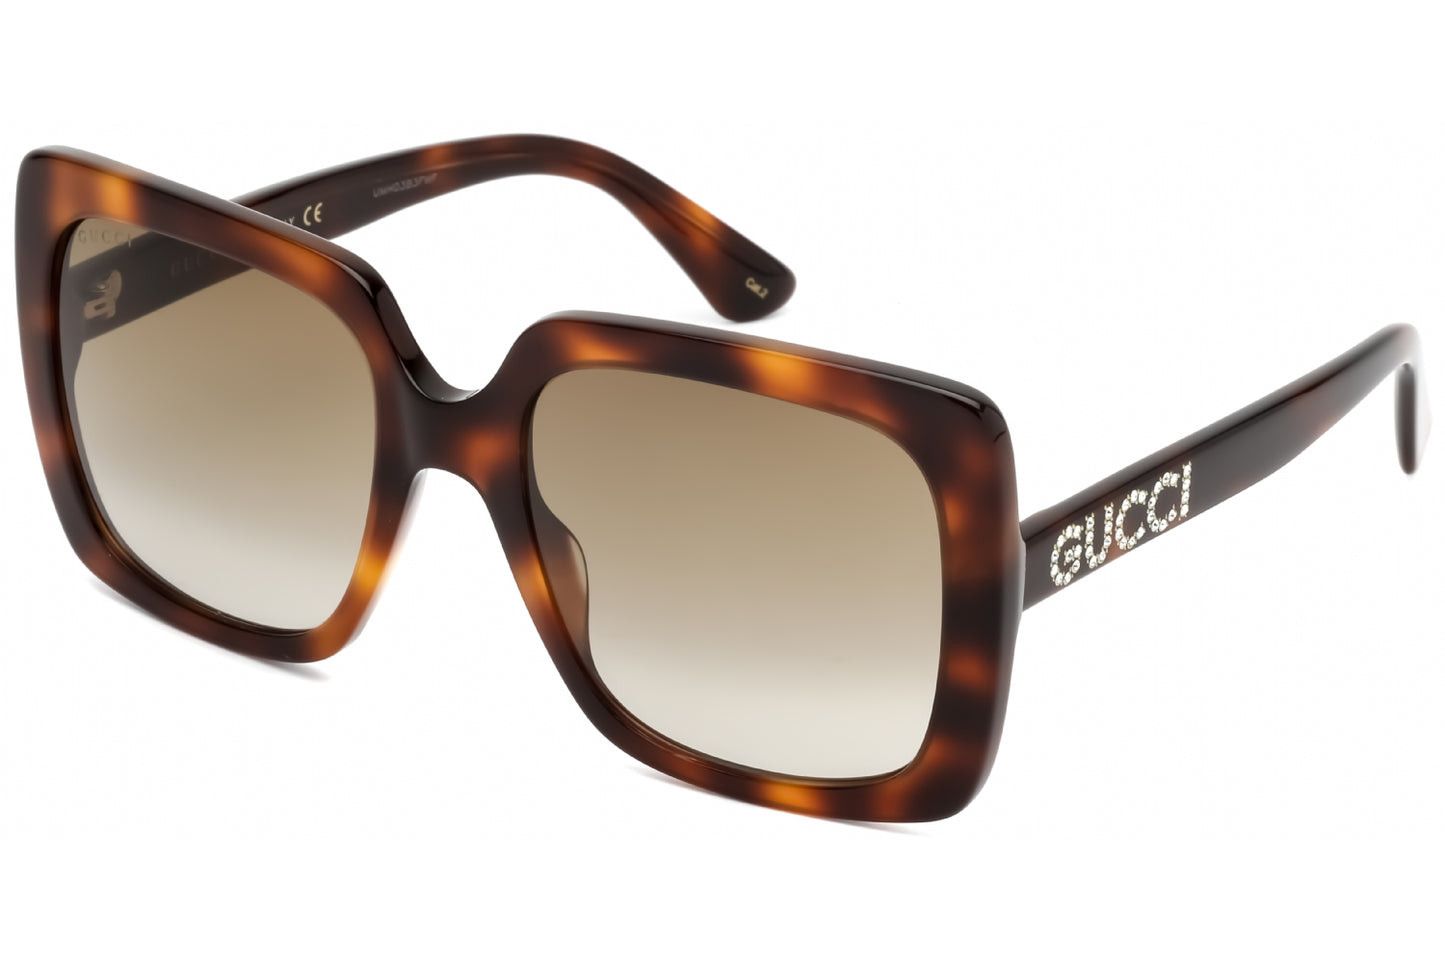 Gucci GG0418S-003 54mm New Sunglasses